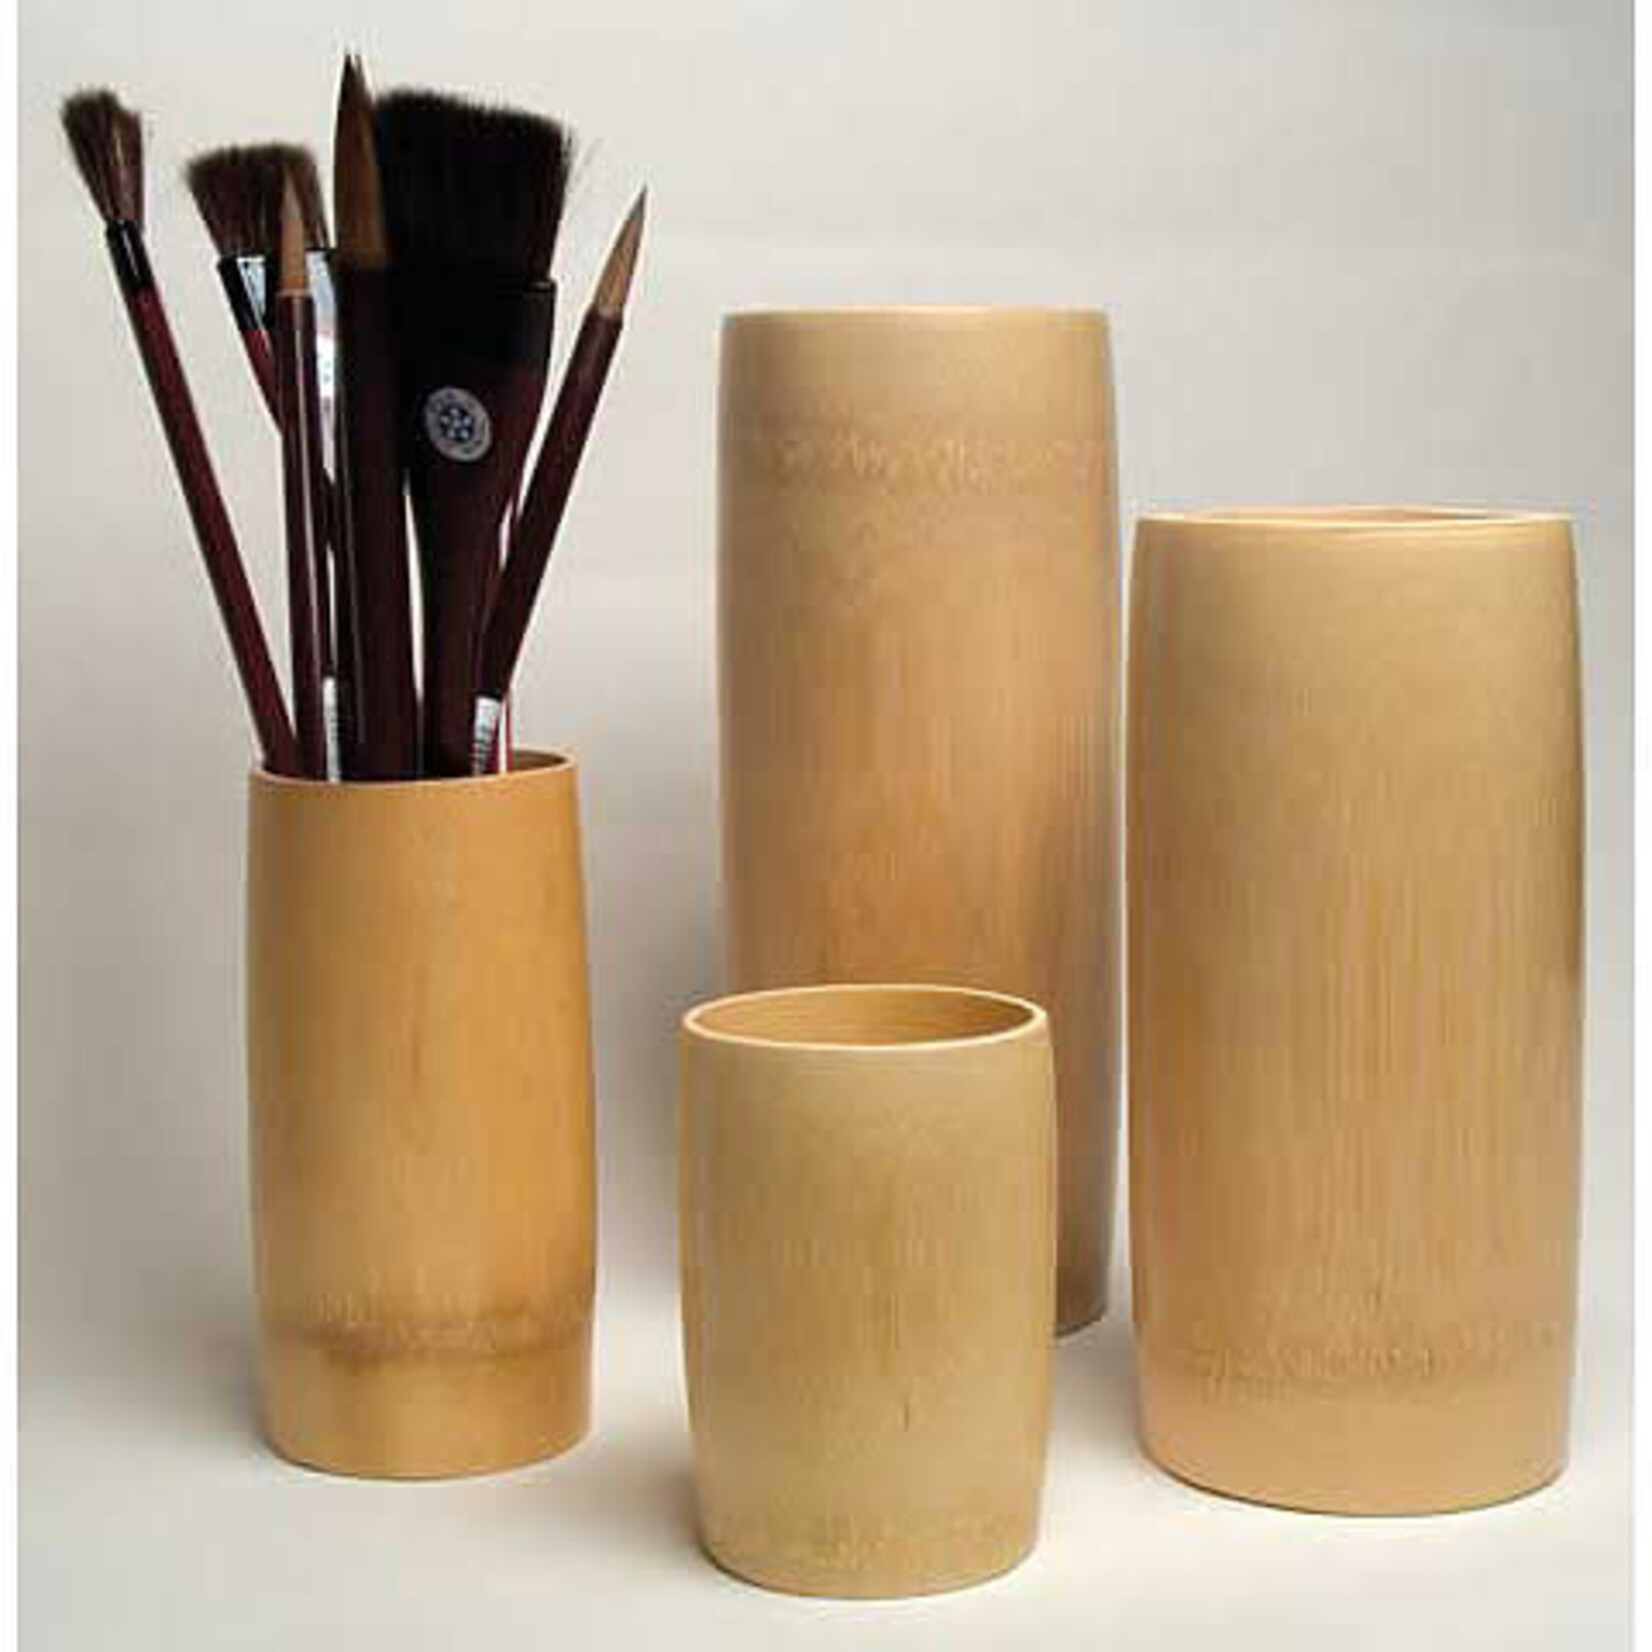 Yasutomo Bamboo Brush Vase Medium 7- 7/8"